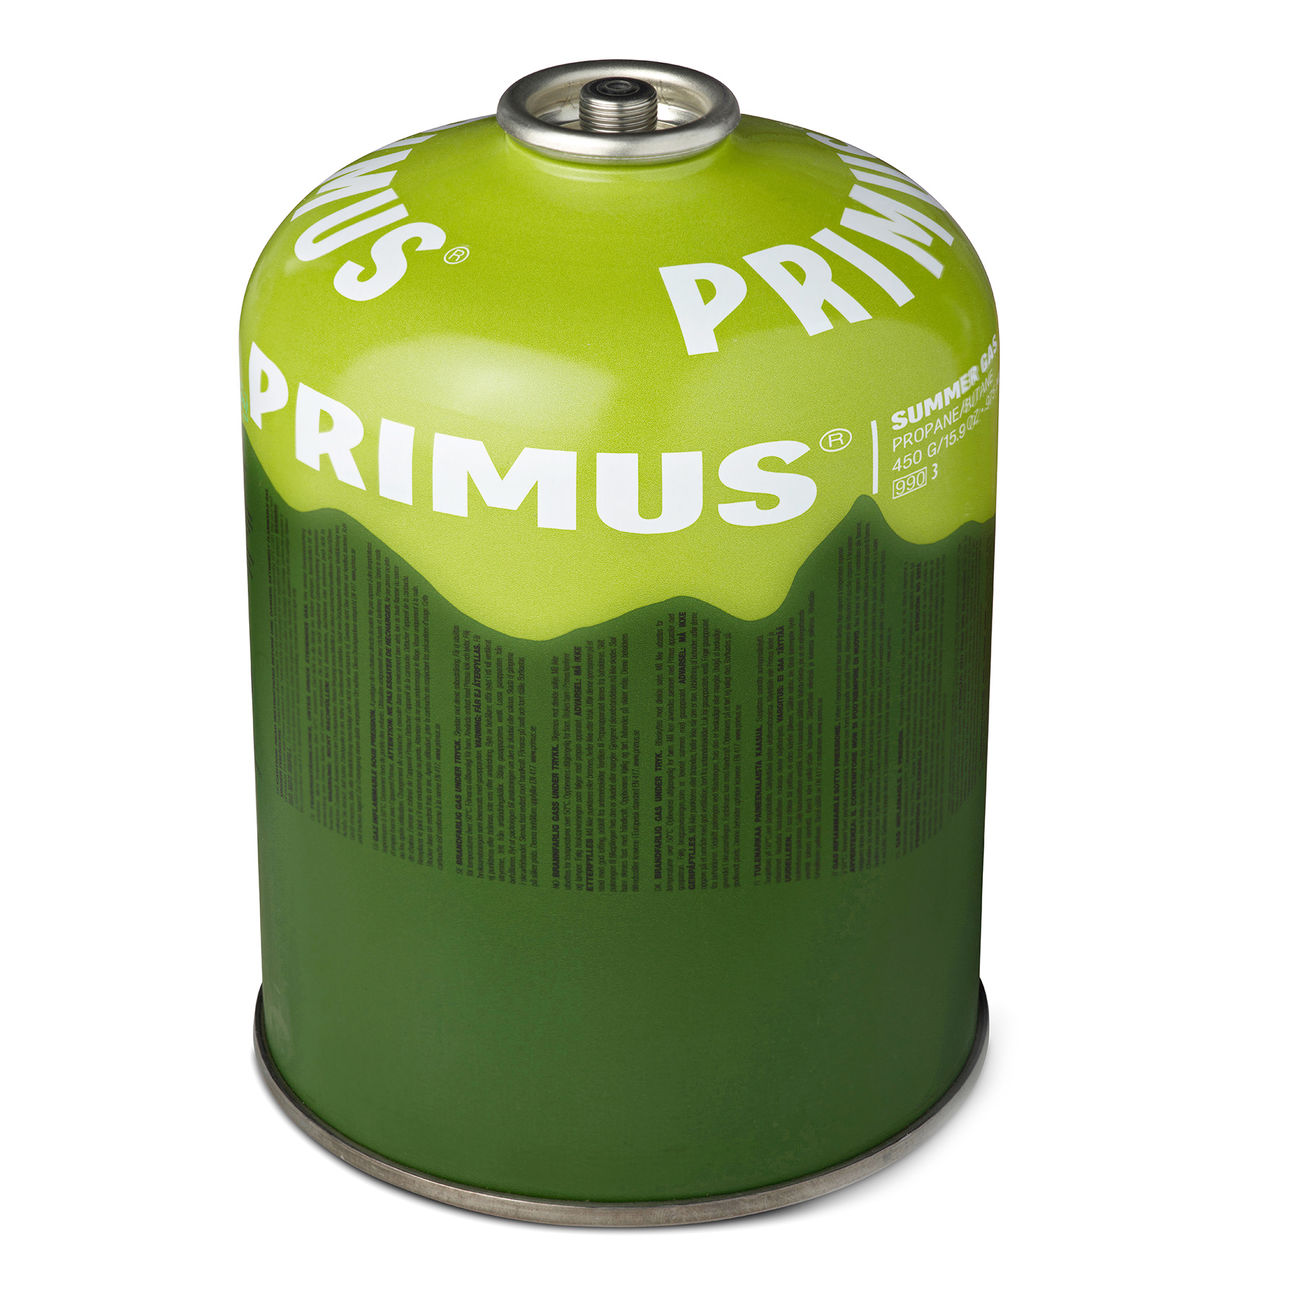 Primus Ventilkartusche Summer Gas 450g Bild 1